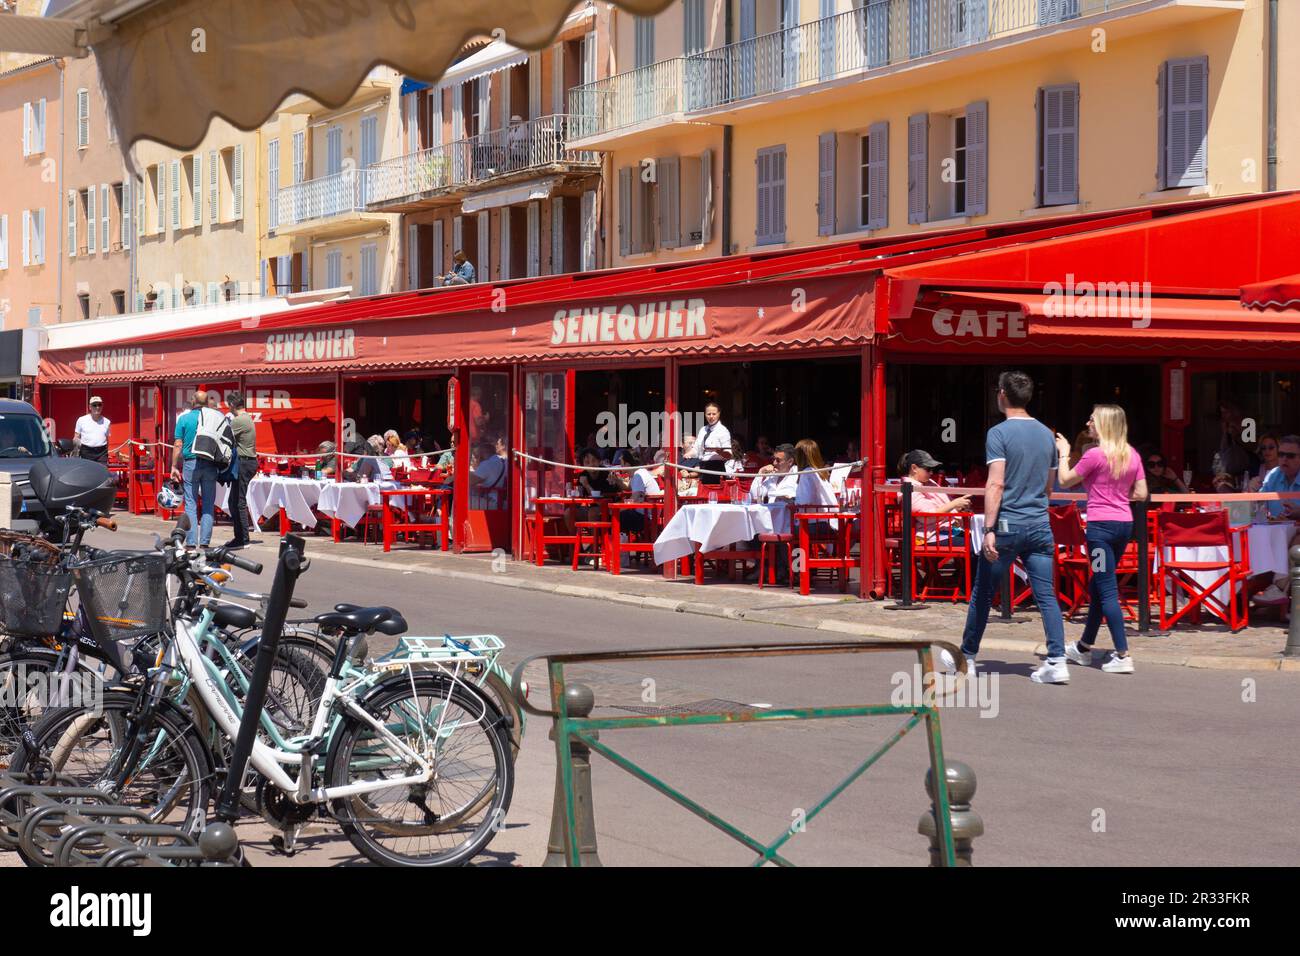 Il caffè Senequier sul porto è popolare tra i turisti a Saint Tropez, Francia. Un elegante café di un ristoratore parigino attrae i proprietari di yacht e i turisti. Foto Stock